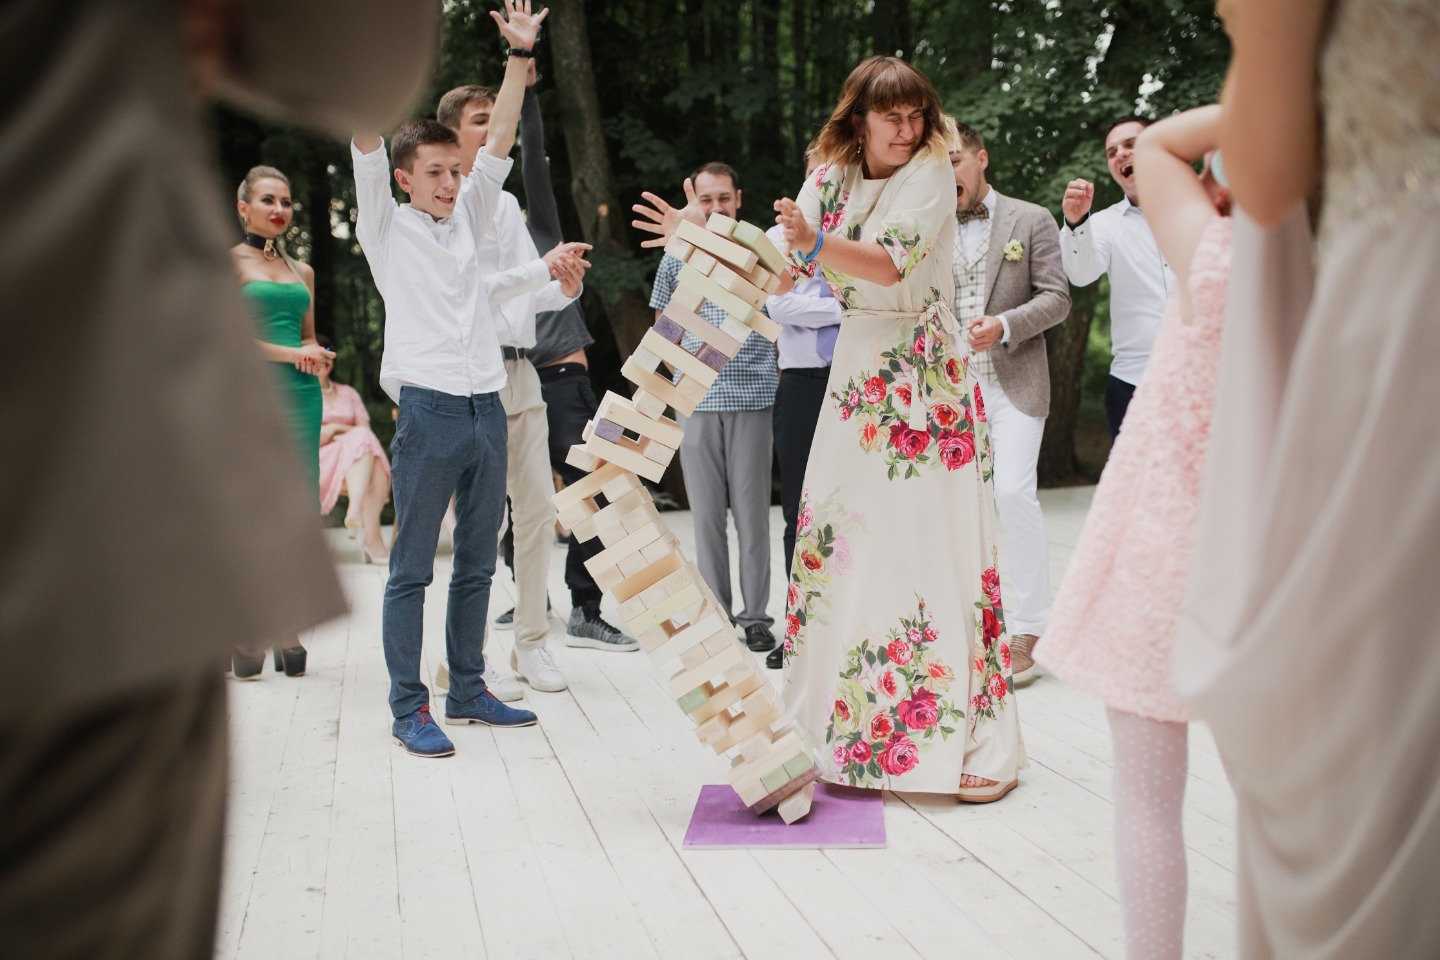 Развлечения на свадьбе: 8 идей, от которых ваши гости будут в восторге